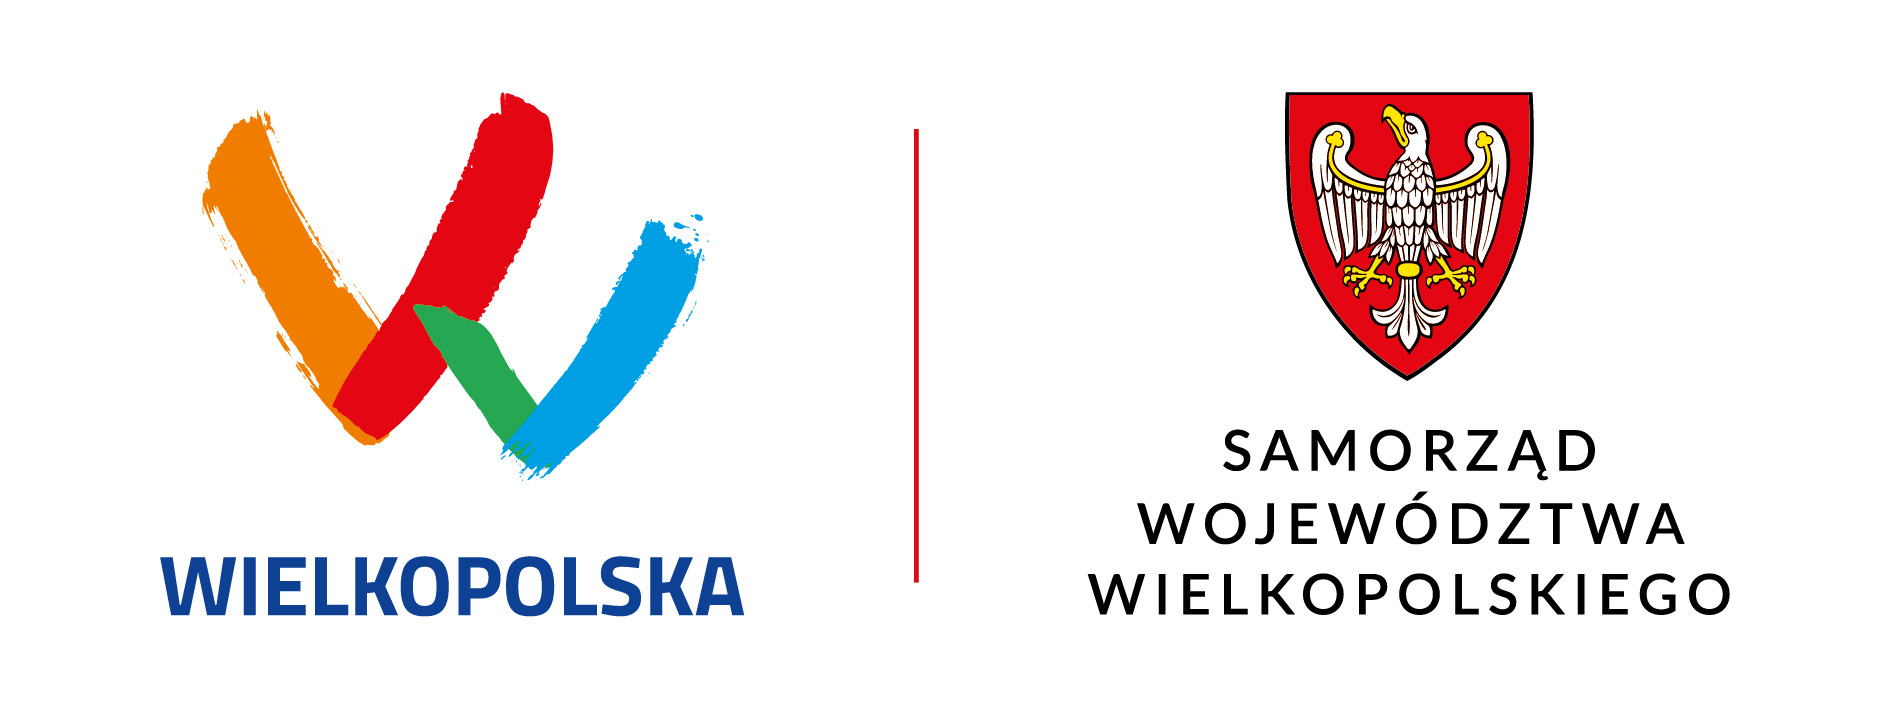 logotyp Województwa Wielkopolskiego i herb Samorządu Województwa Wielkopolskiego